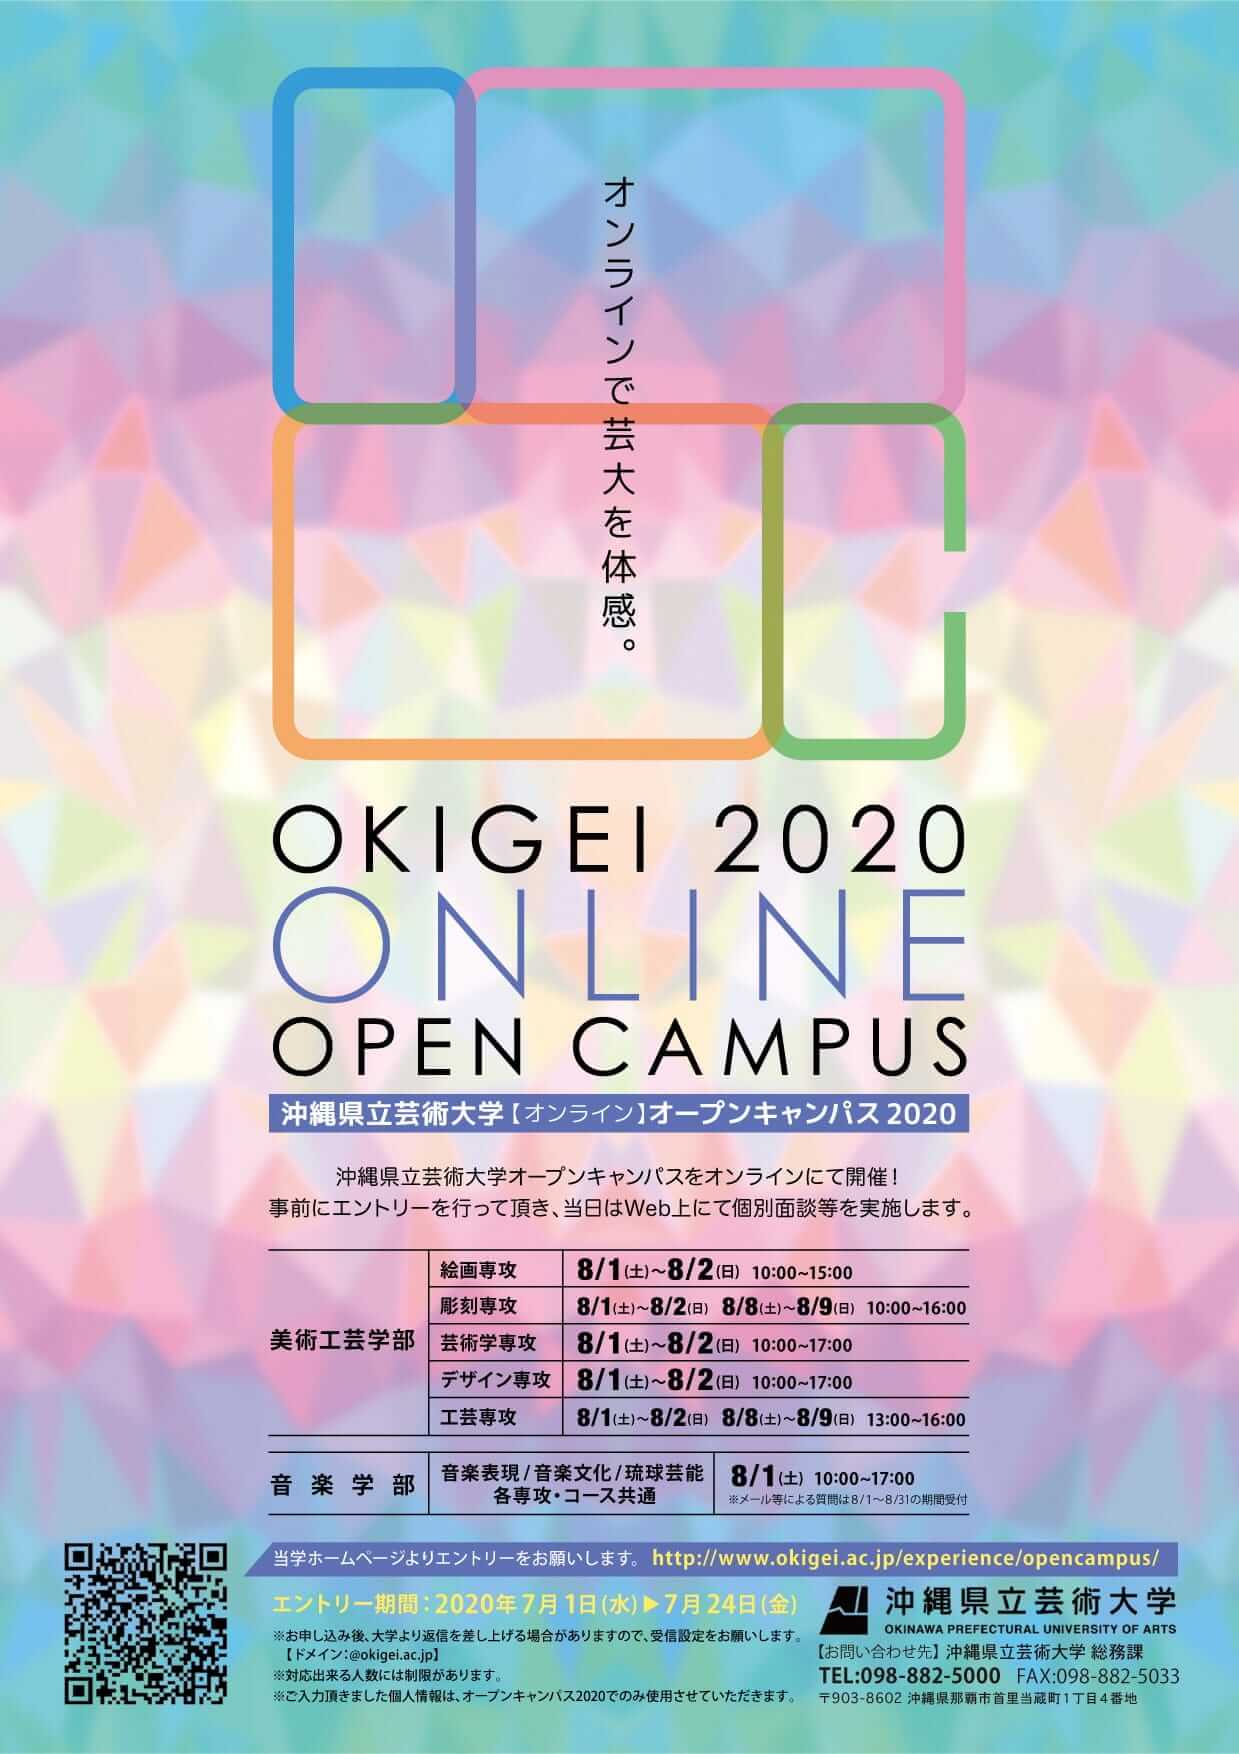 沖縄県立芸術大学【オンライン】オープンキャンパス2020ご案内